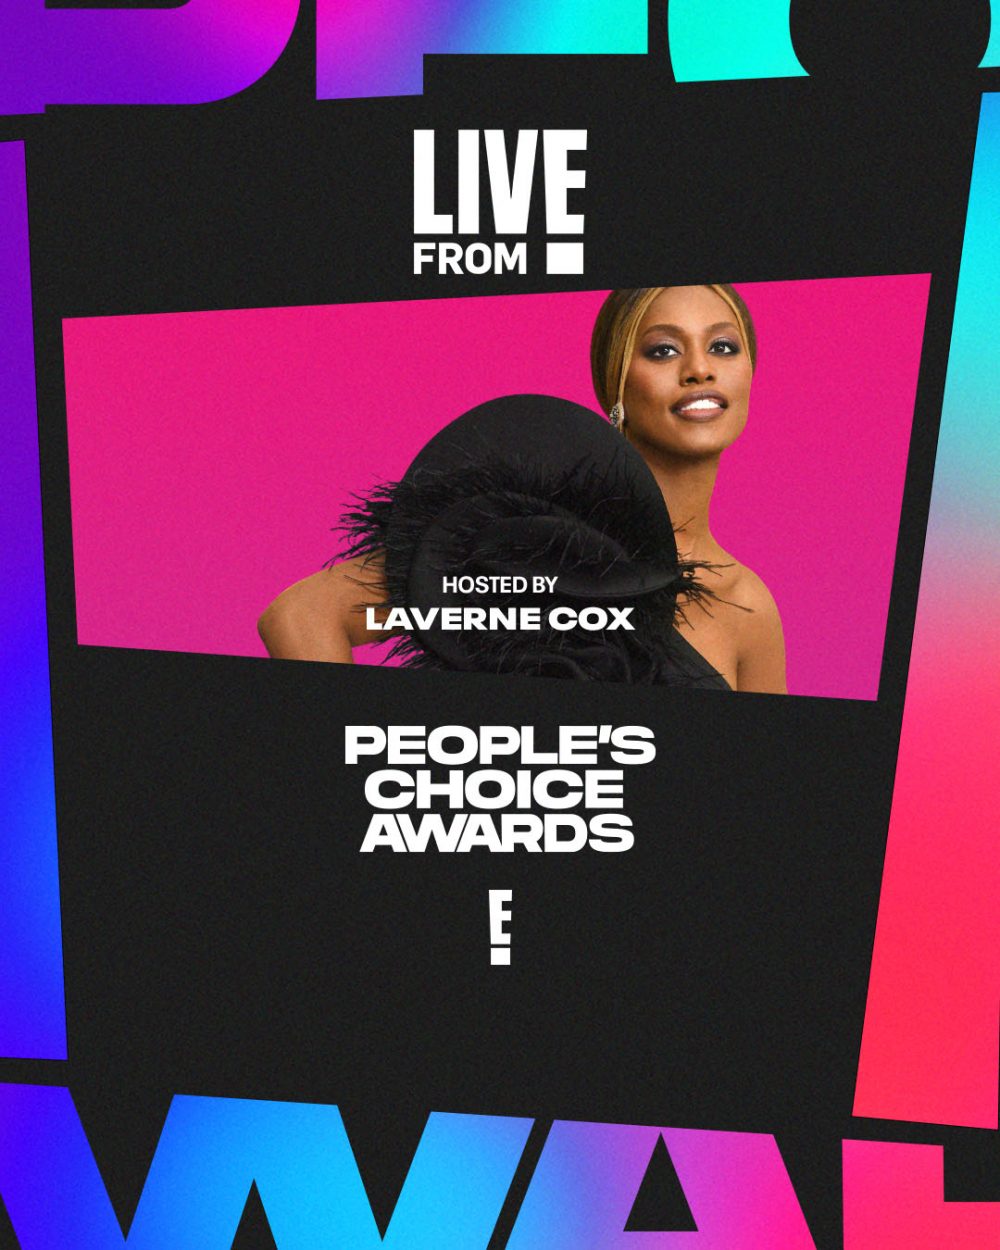 PCAs Laverne Cox e1638785970910 Svi detalji prenosa sa crvenog tepiha povodom dodele nagrada   E! Live 2021 Peoples Choice Awards